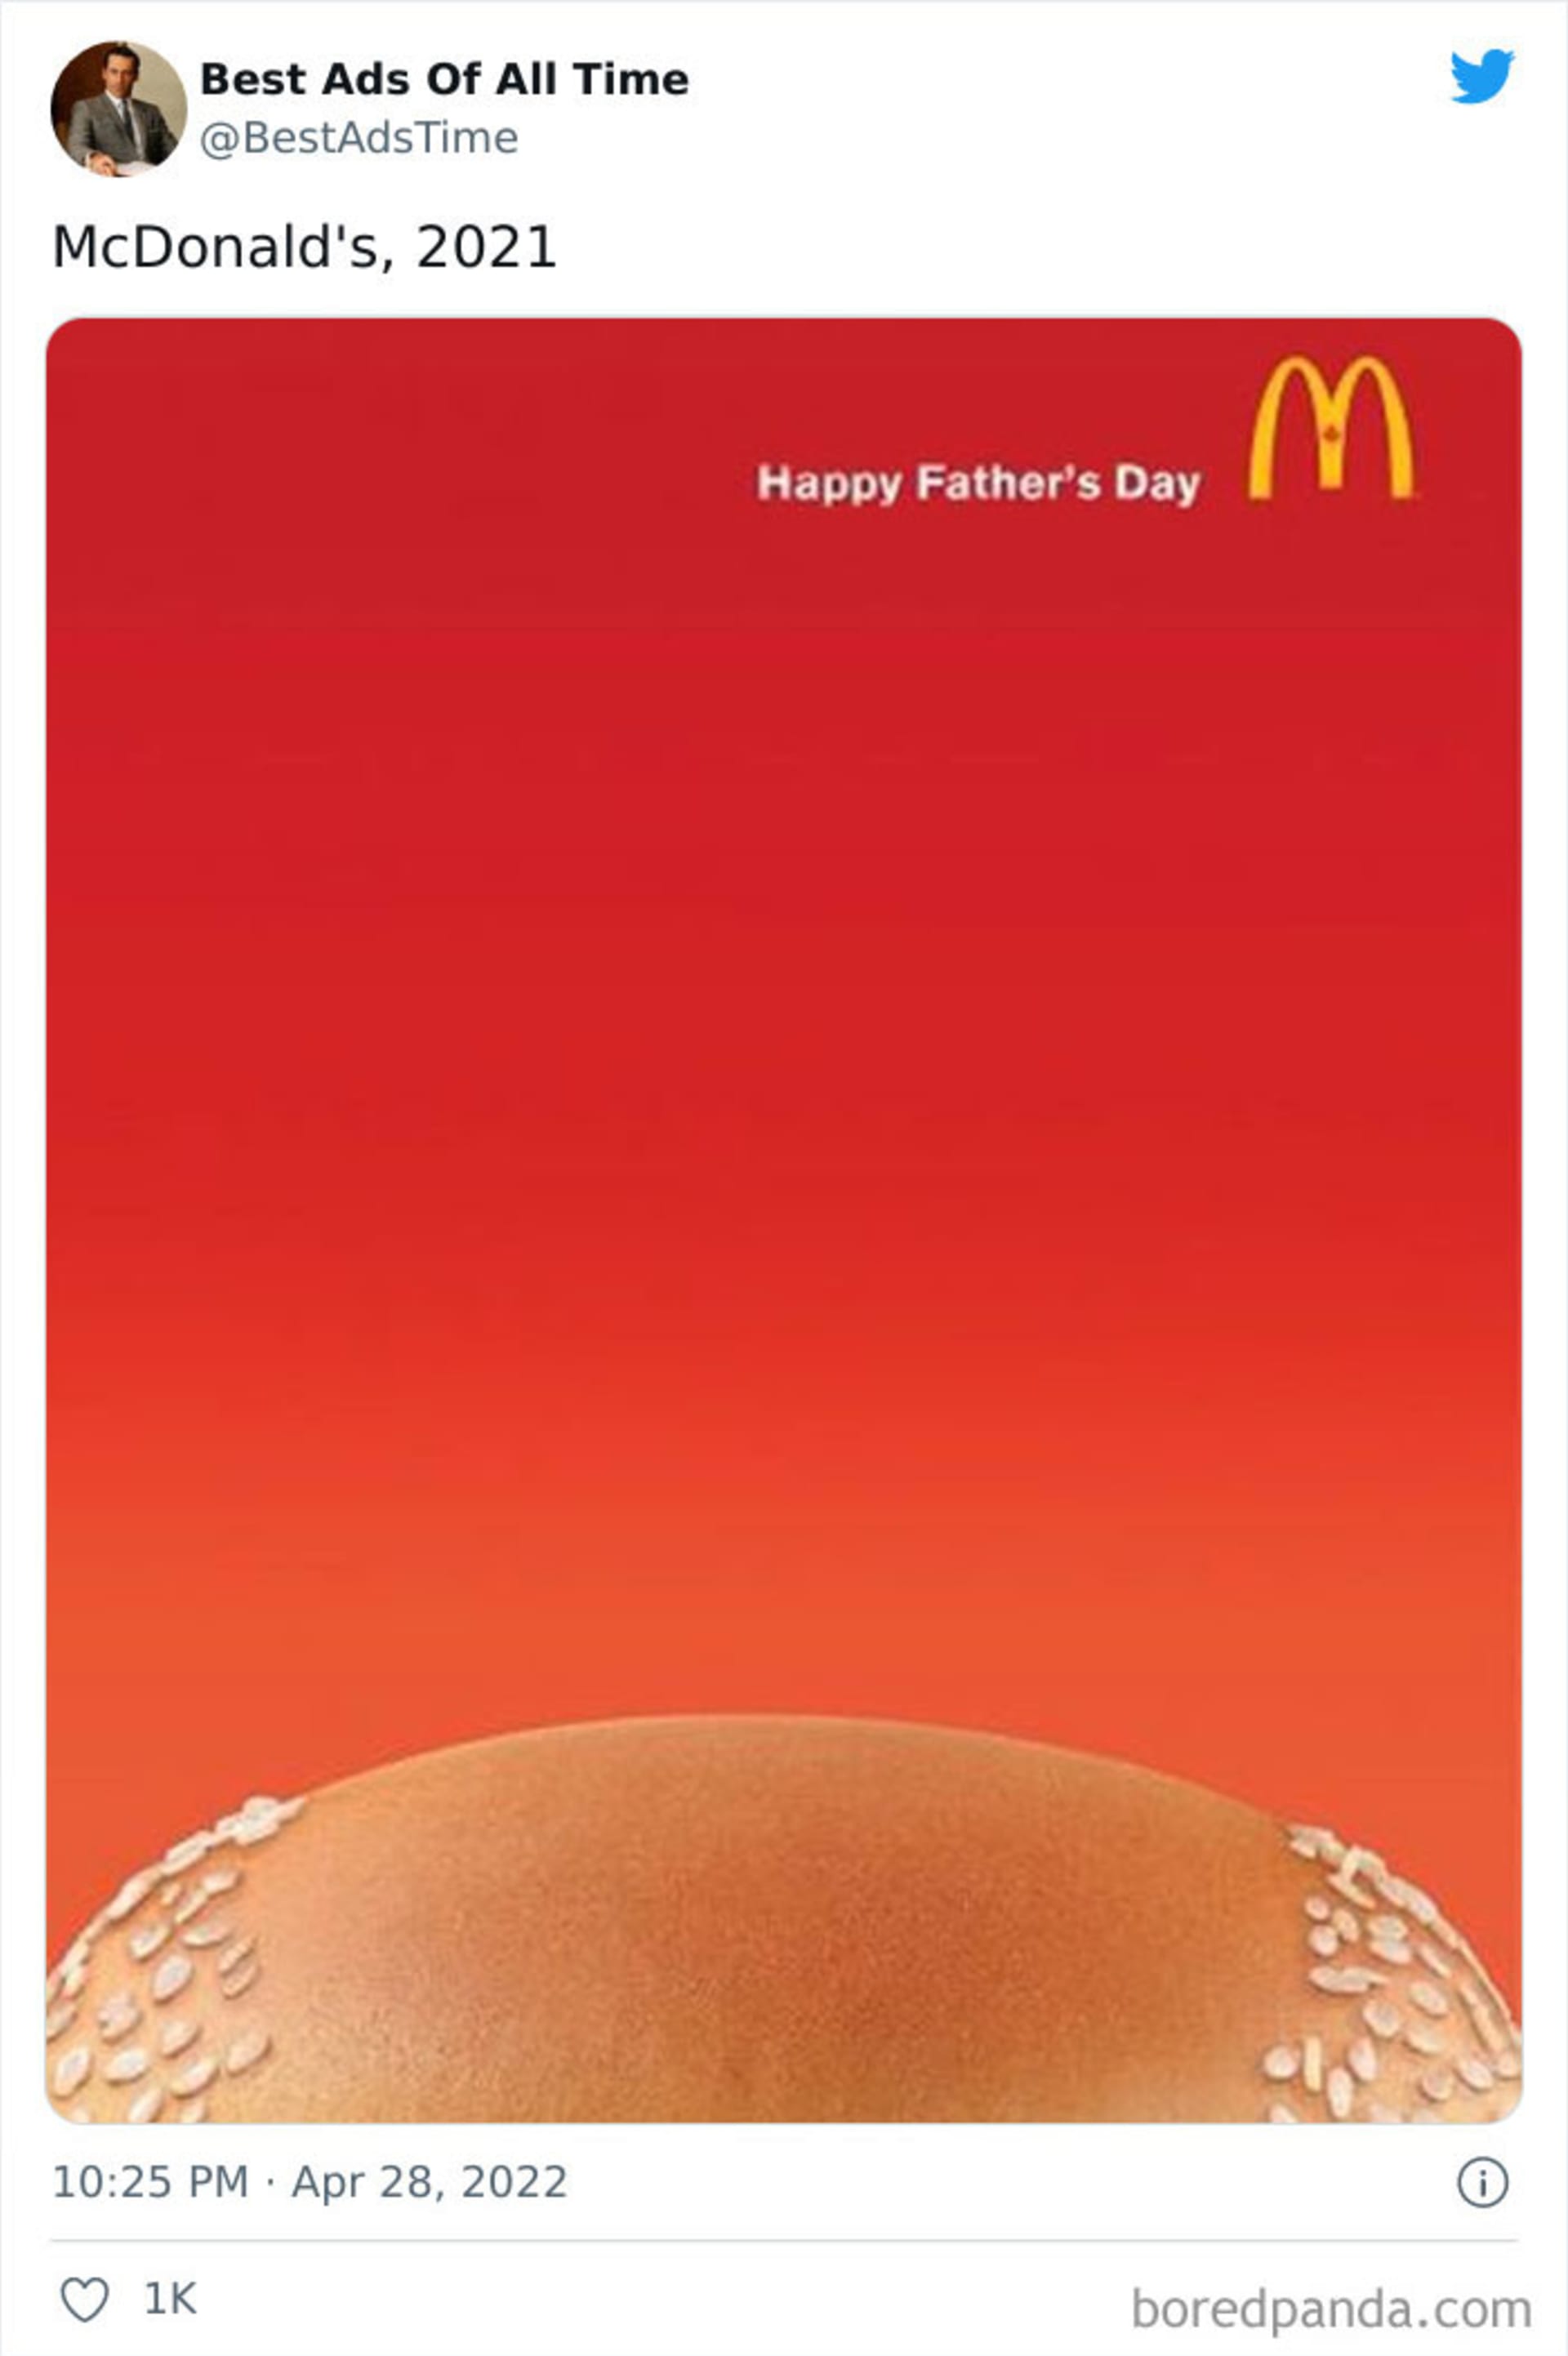 Další povedená reklama na Den otců.